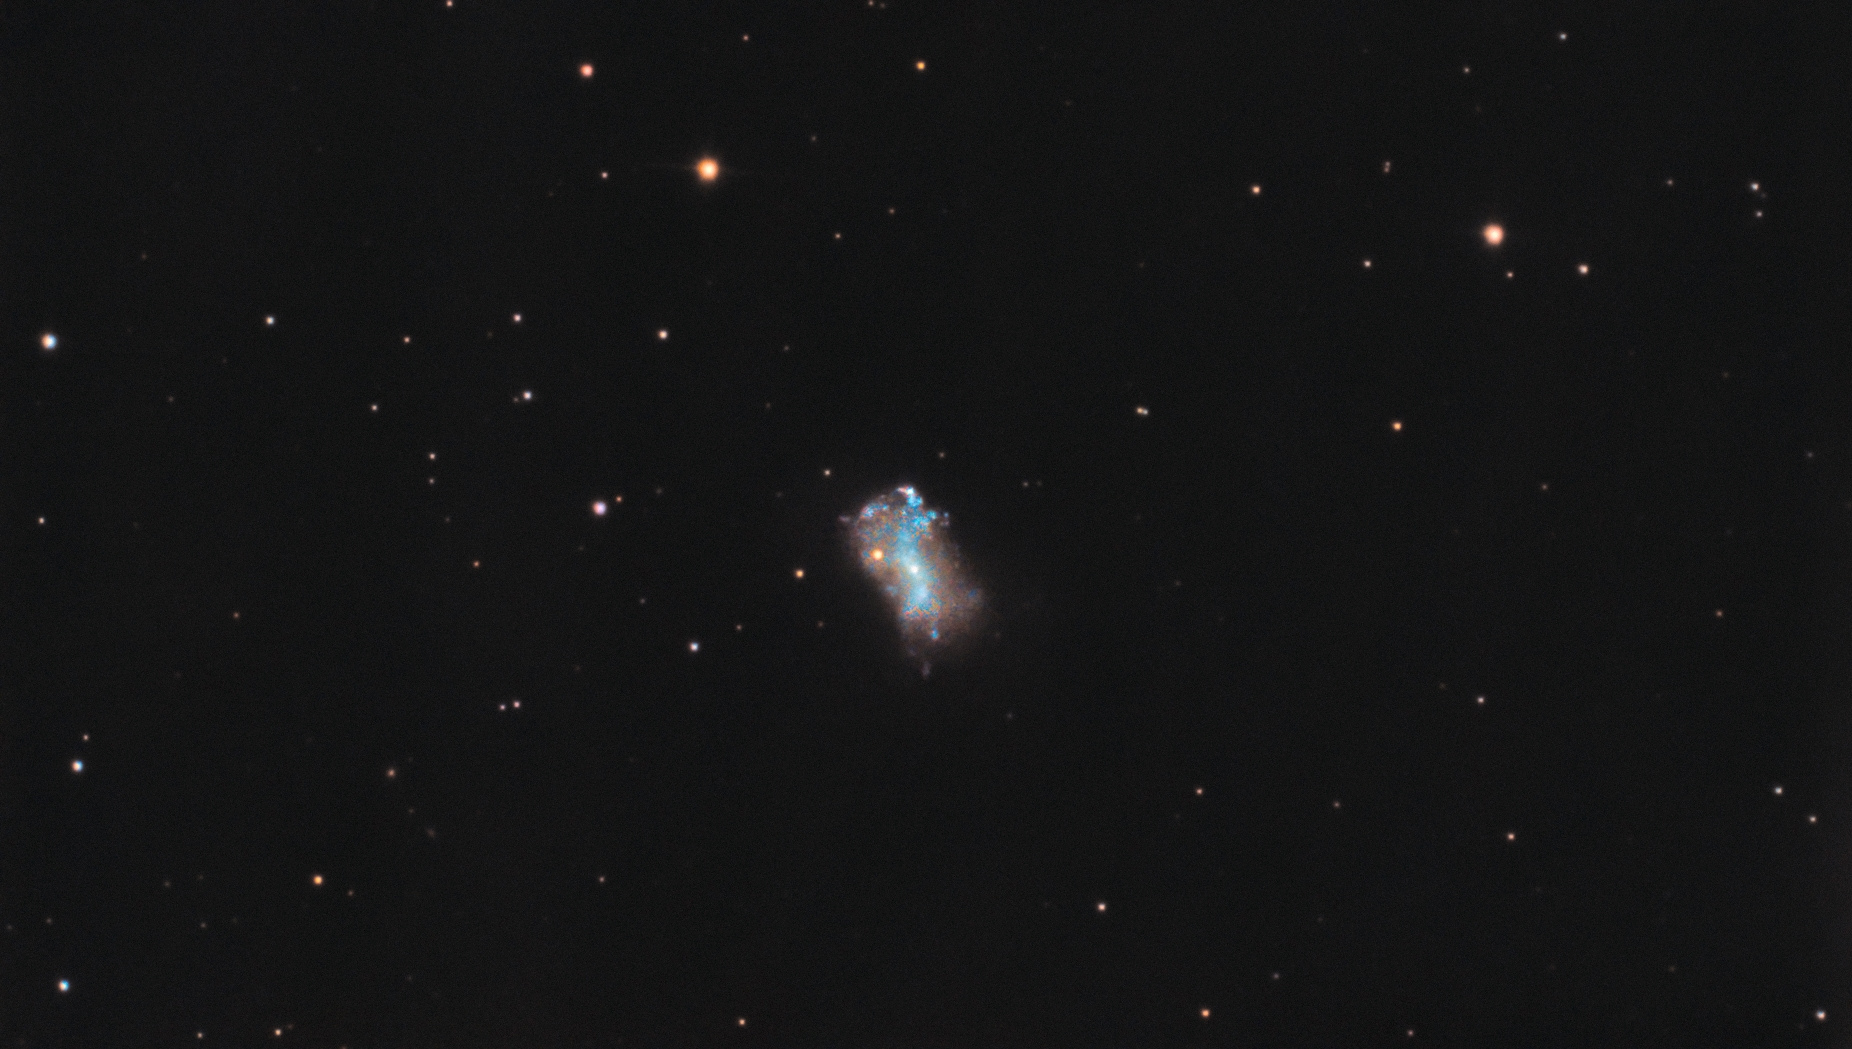 r_NGC4449-P1P2_stacked-gradient-photom-ghs-histo-v3.jpg.b4cd5975d1df1419e95da6cd3ad1b580.jpg